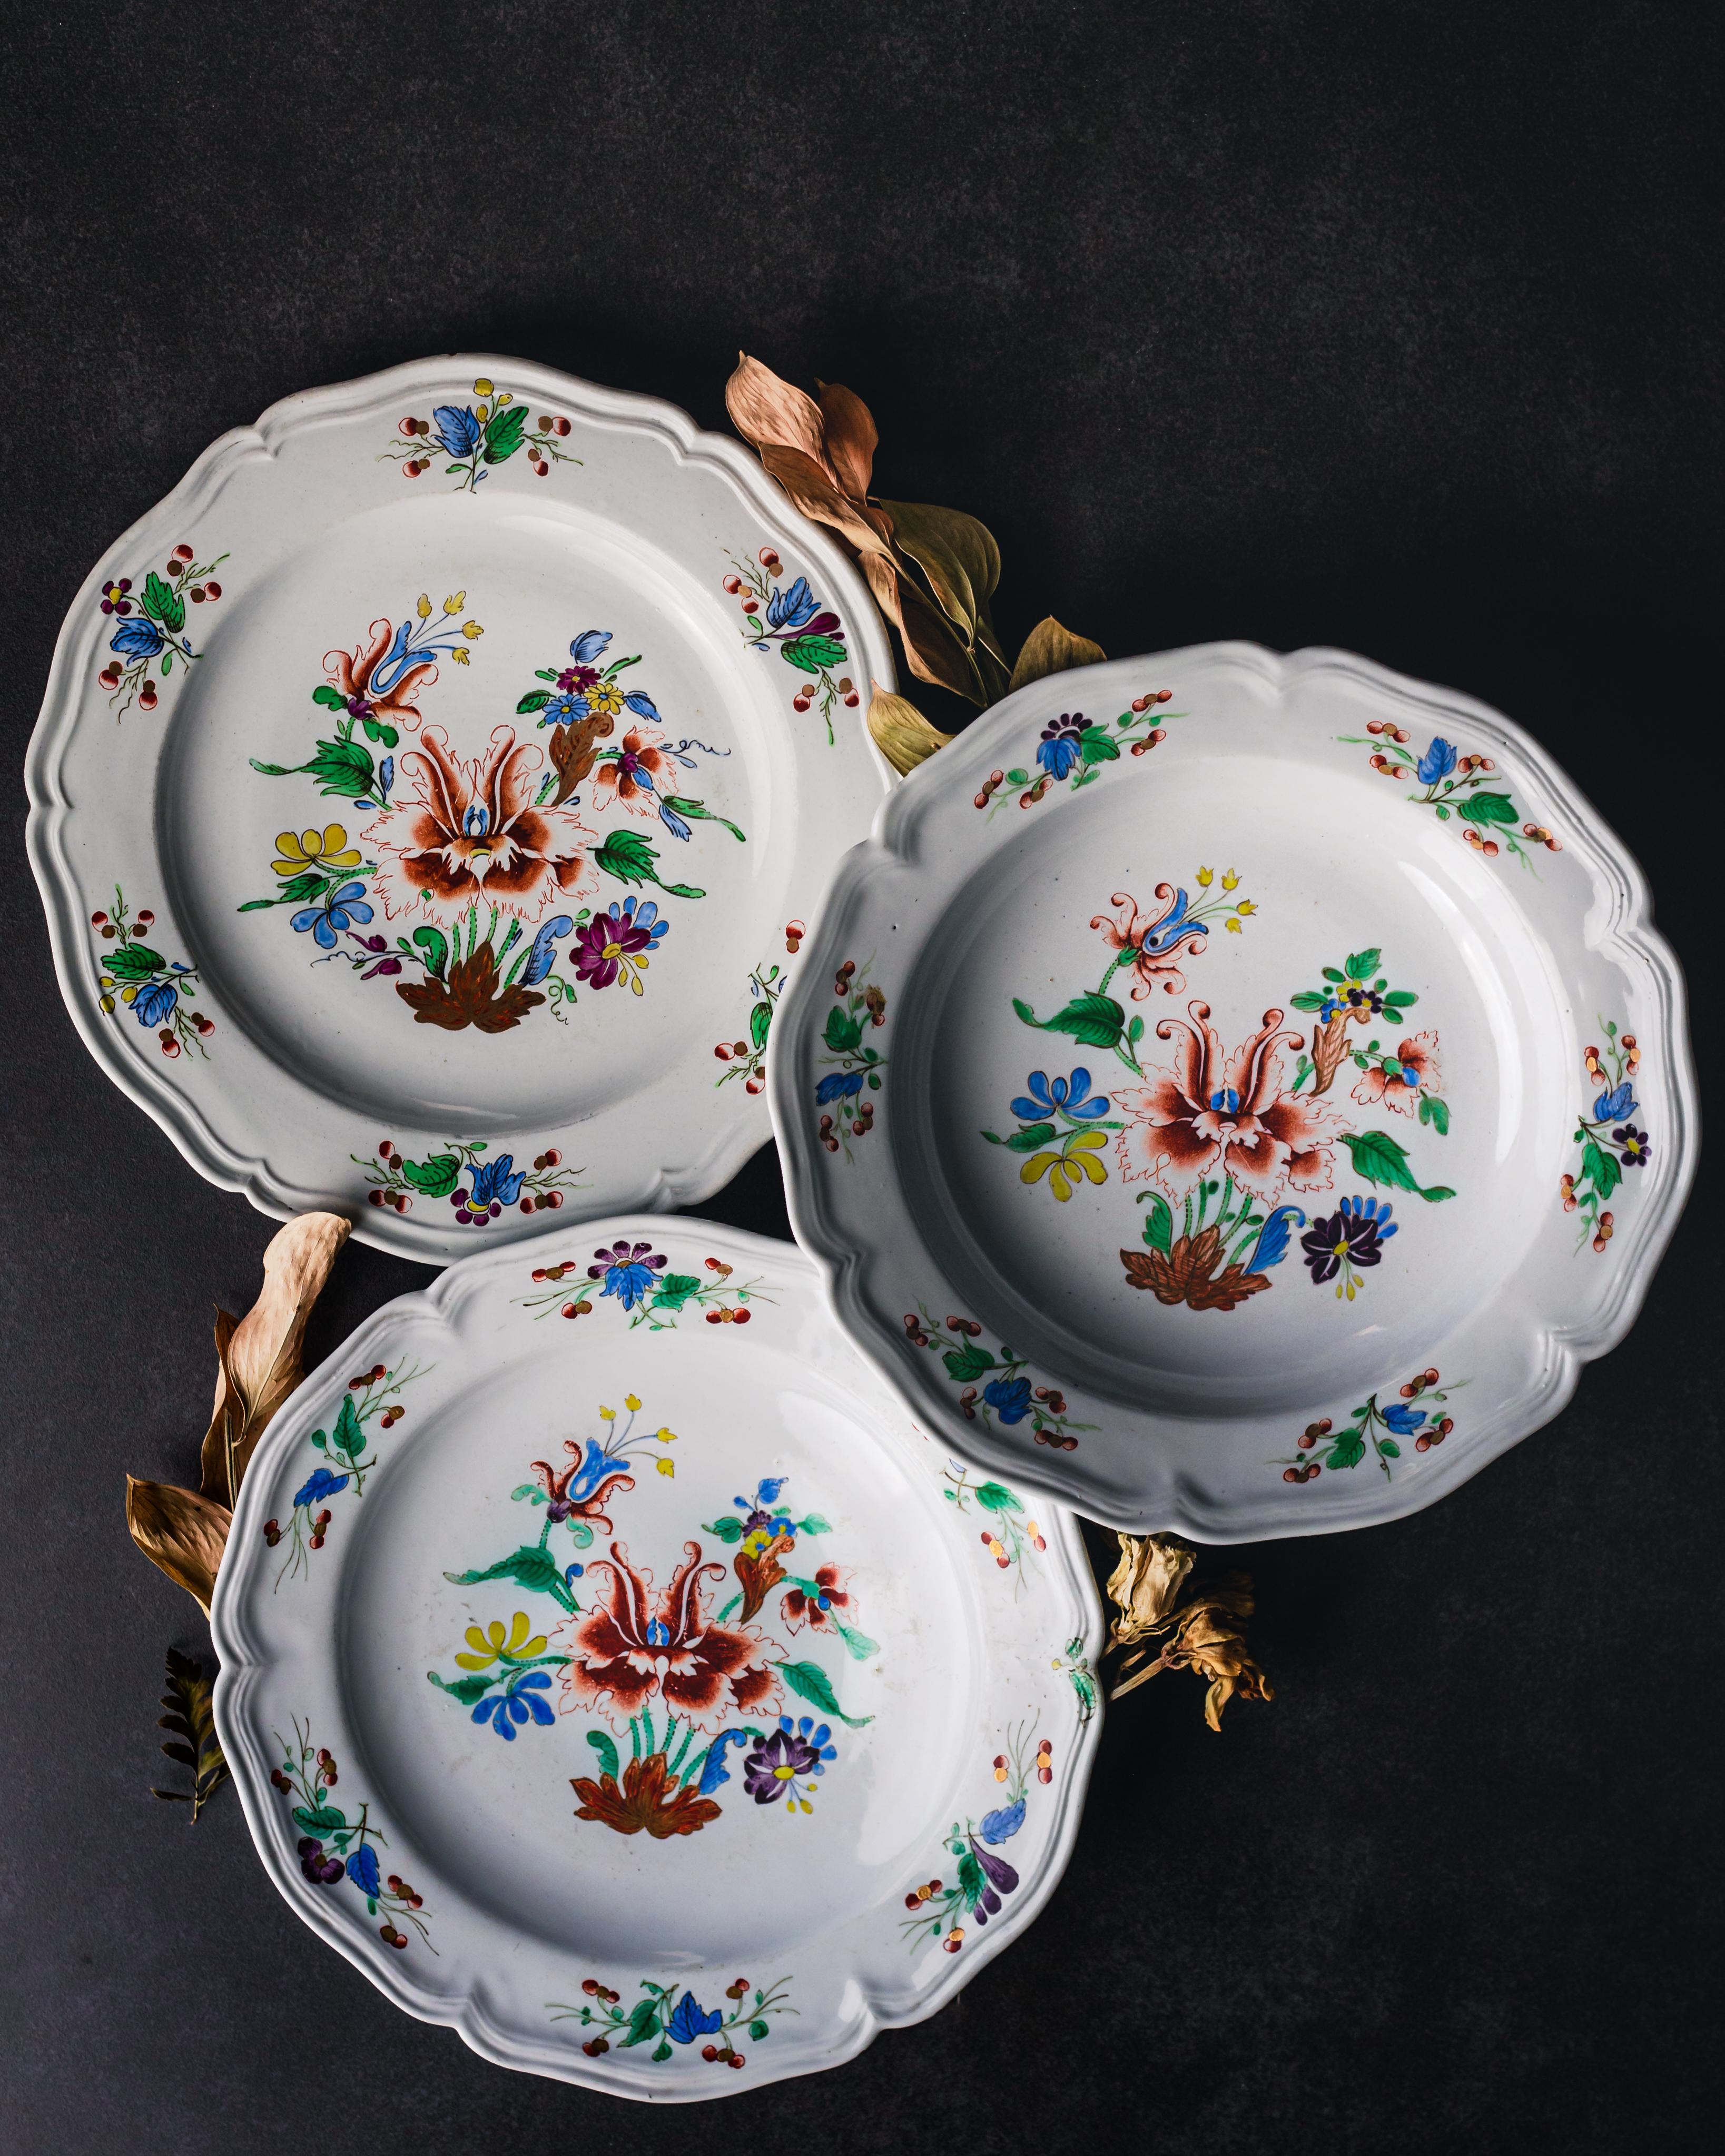 Service de table composé de six assiettes plates et de six assiettes creuses, réalisé par la Manufacture de porcelaine de Doccia, vers 1750.

L'Italie a été le lieu de la première production de porcelaine en Europe : à Florence, entre 1575 et